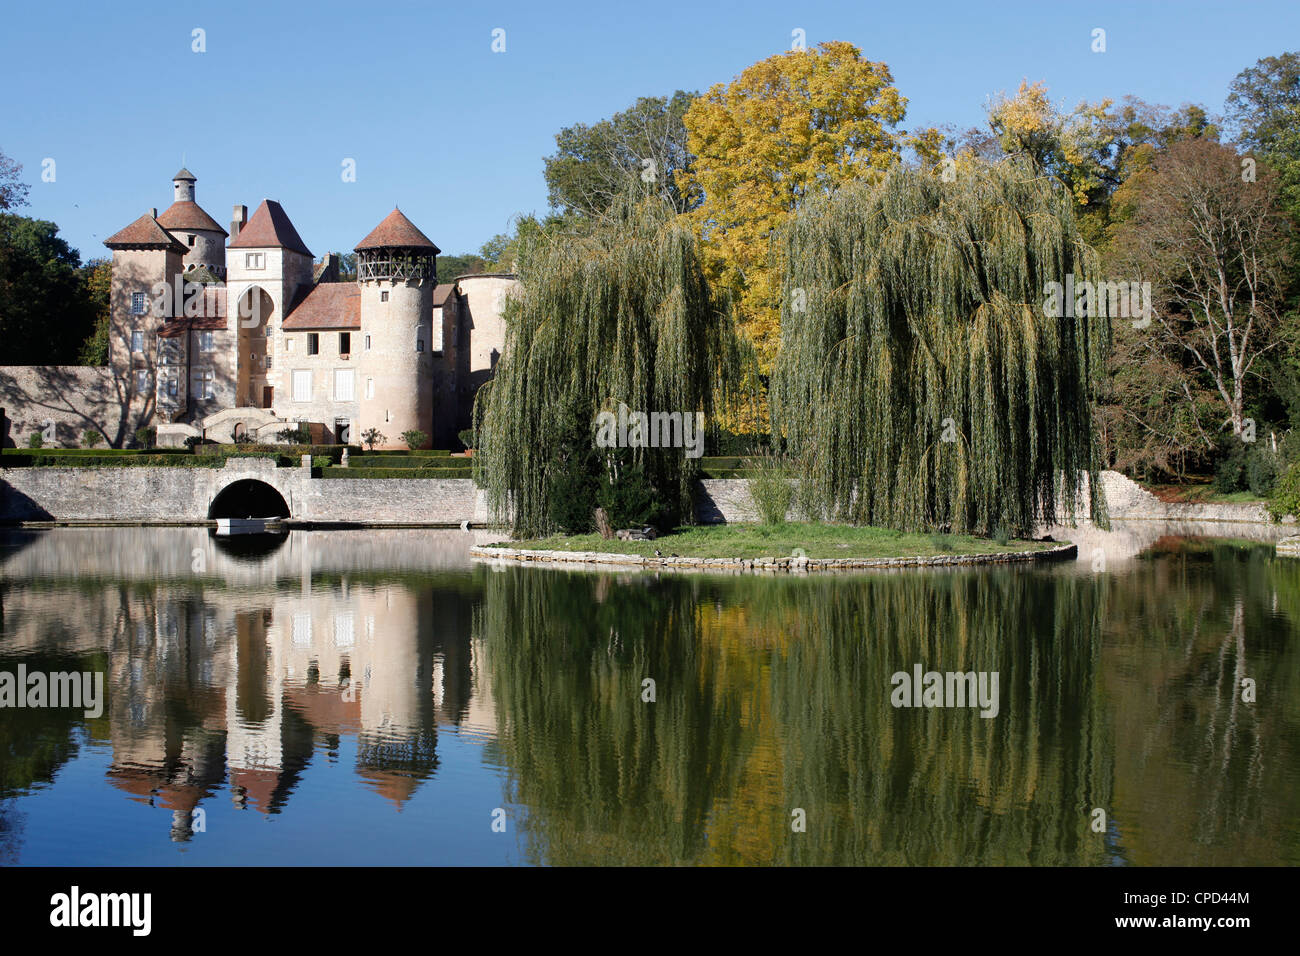 Sercy château, datant du 15ème siècle, Sercy, Saône-et-Loire, Bourgogne, France, Europe Banque D'Images